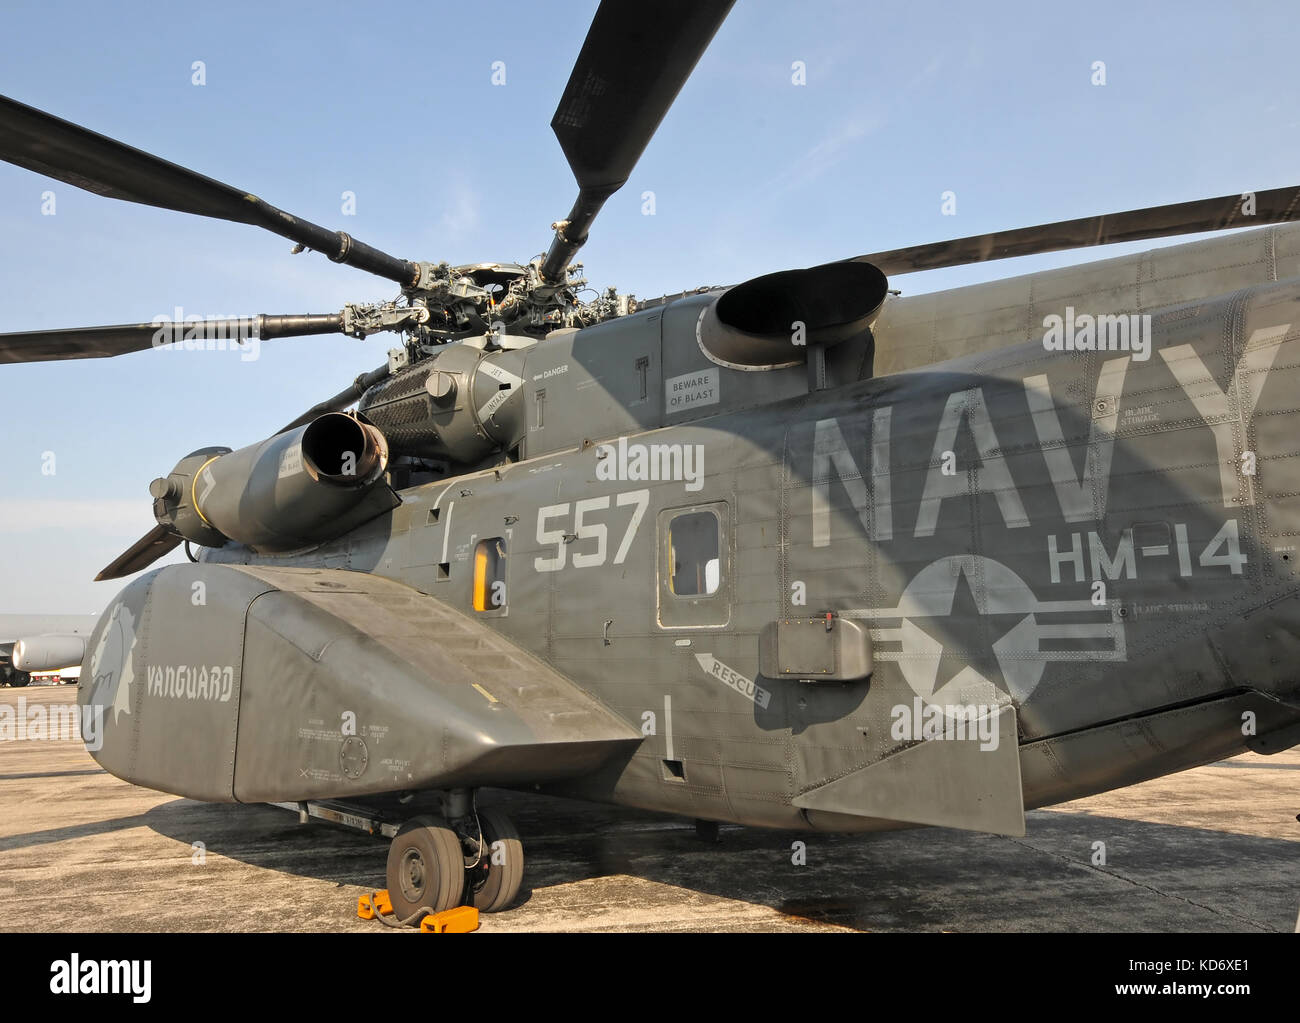 Ypsilanti, Michigan - augist 8, 2010: MH-53e Sea Dragon Hubschrauber von HM-14, US Navy 'Avantgarde' Hubschrauber meine Gegenmaßnahmen squadron in der Grundlage Stockfoto